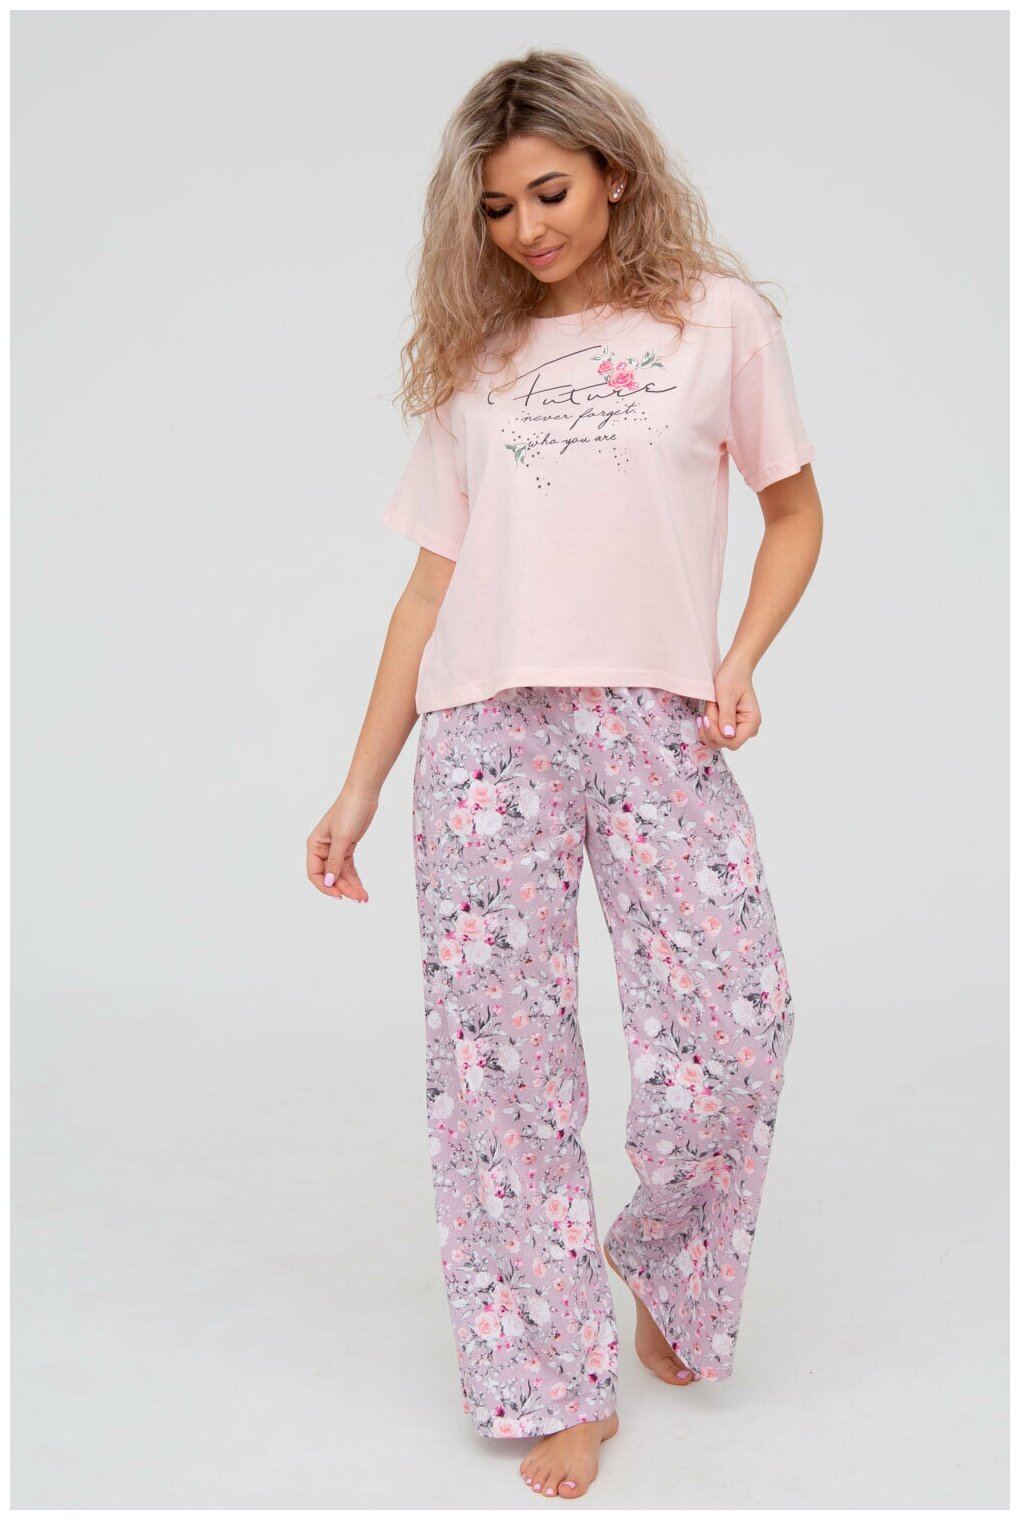 Пижама DIANIDA М-799 размеры 44-54 (44, Розовый) - фотография № 1